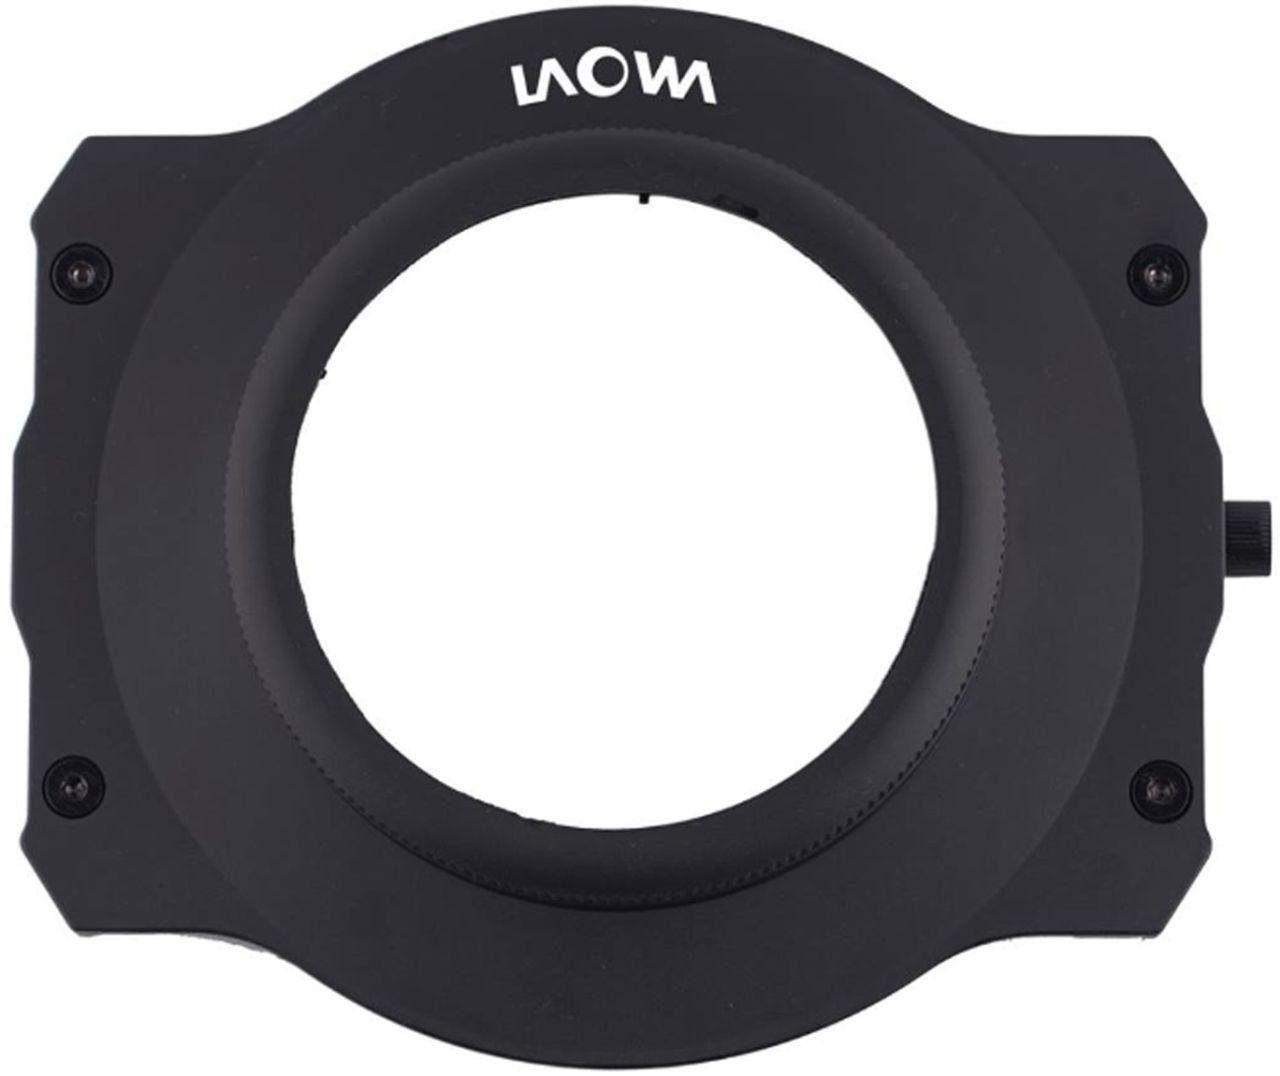 10-18mm Objektivzubehör LAOWA magnetischer für 100mm Filterhalter